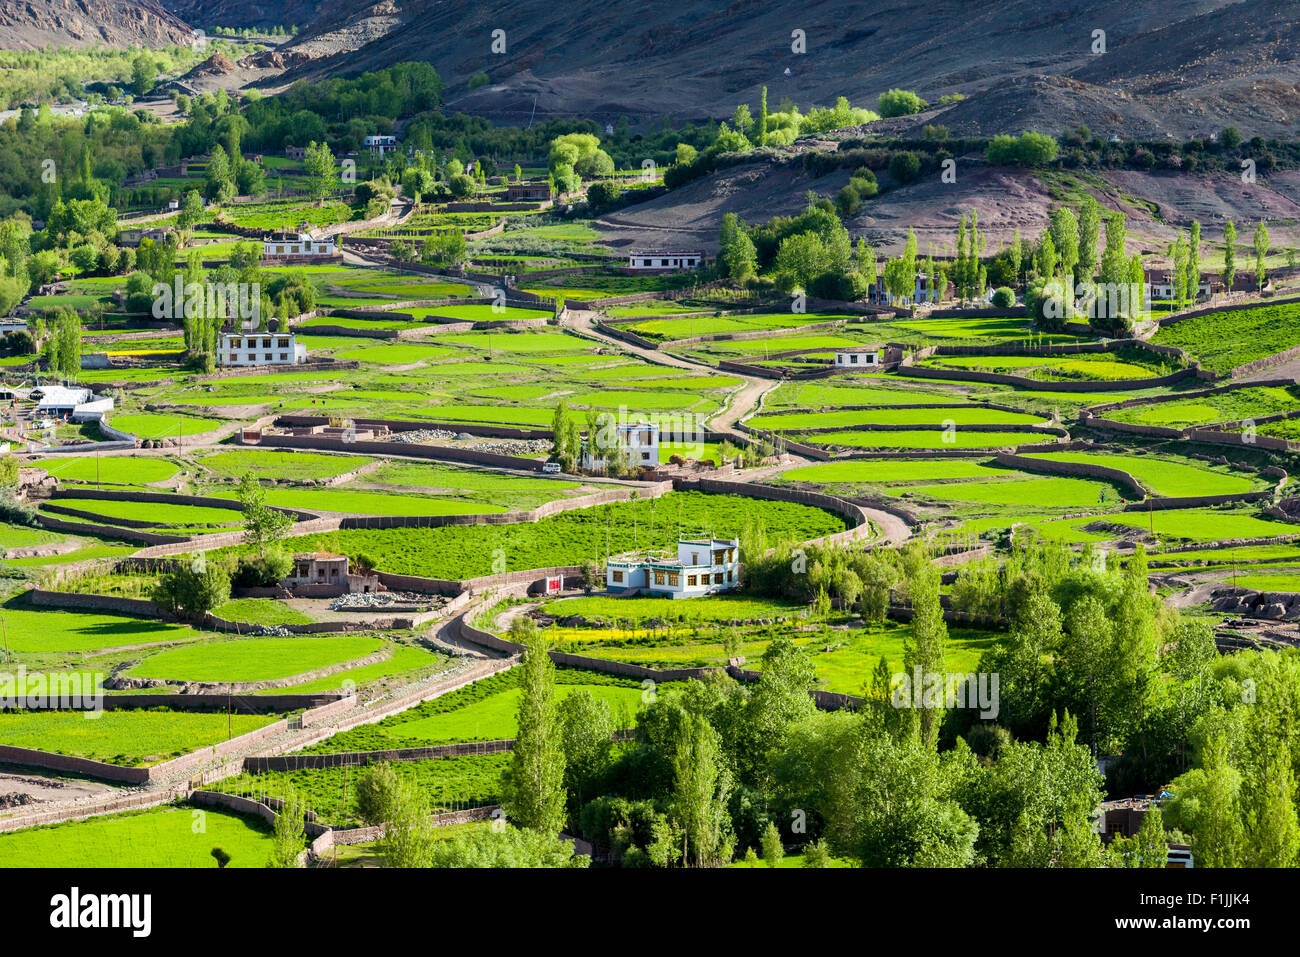 Vista aérea de campos verdes y casas de campo en un pequeño valle alto por encima del valle del Indo, Matho, Jammu y Cachemira, la India Foto de stock